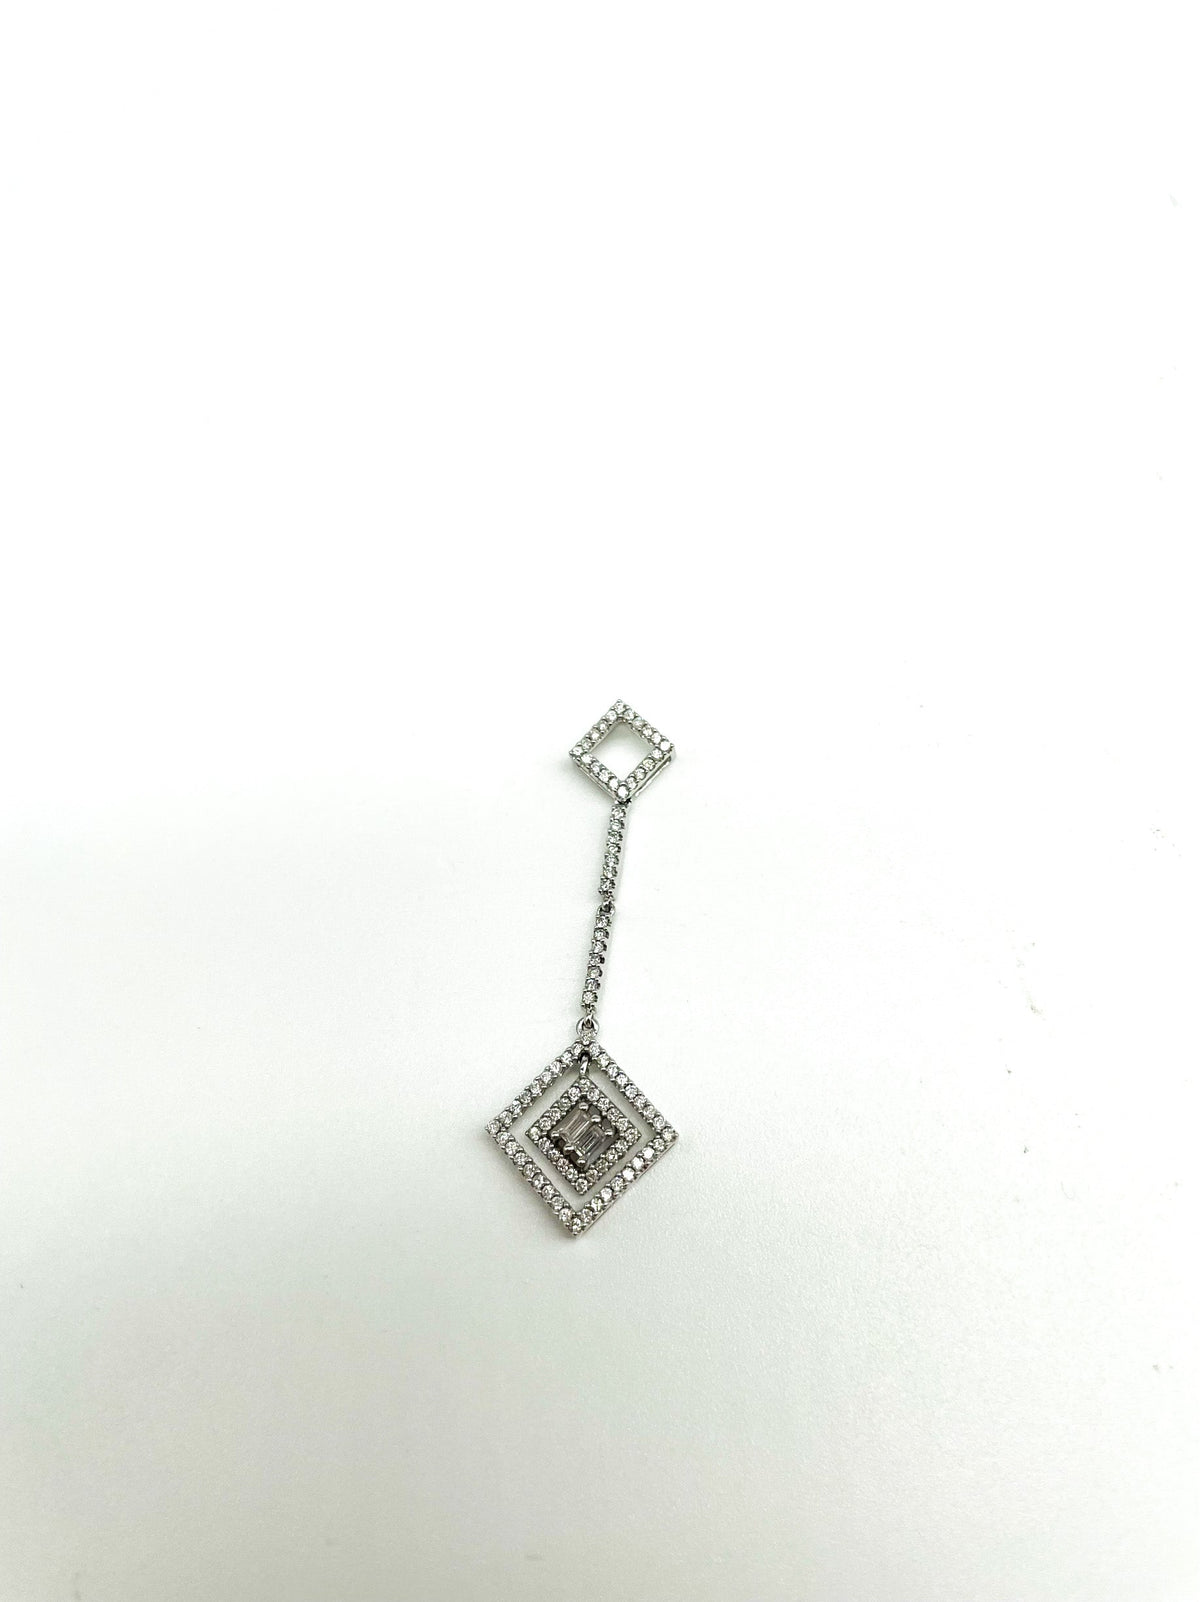 .65 Point Round Brilliant Baguette Cut Diamond Pendant